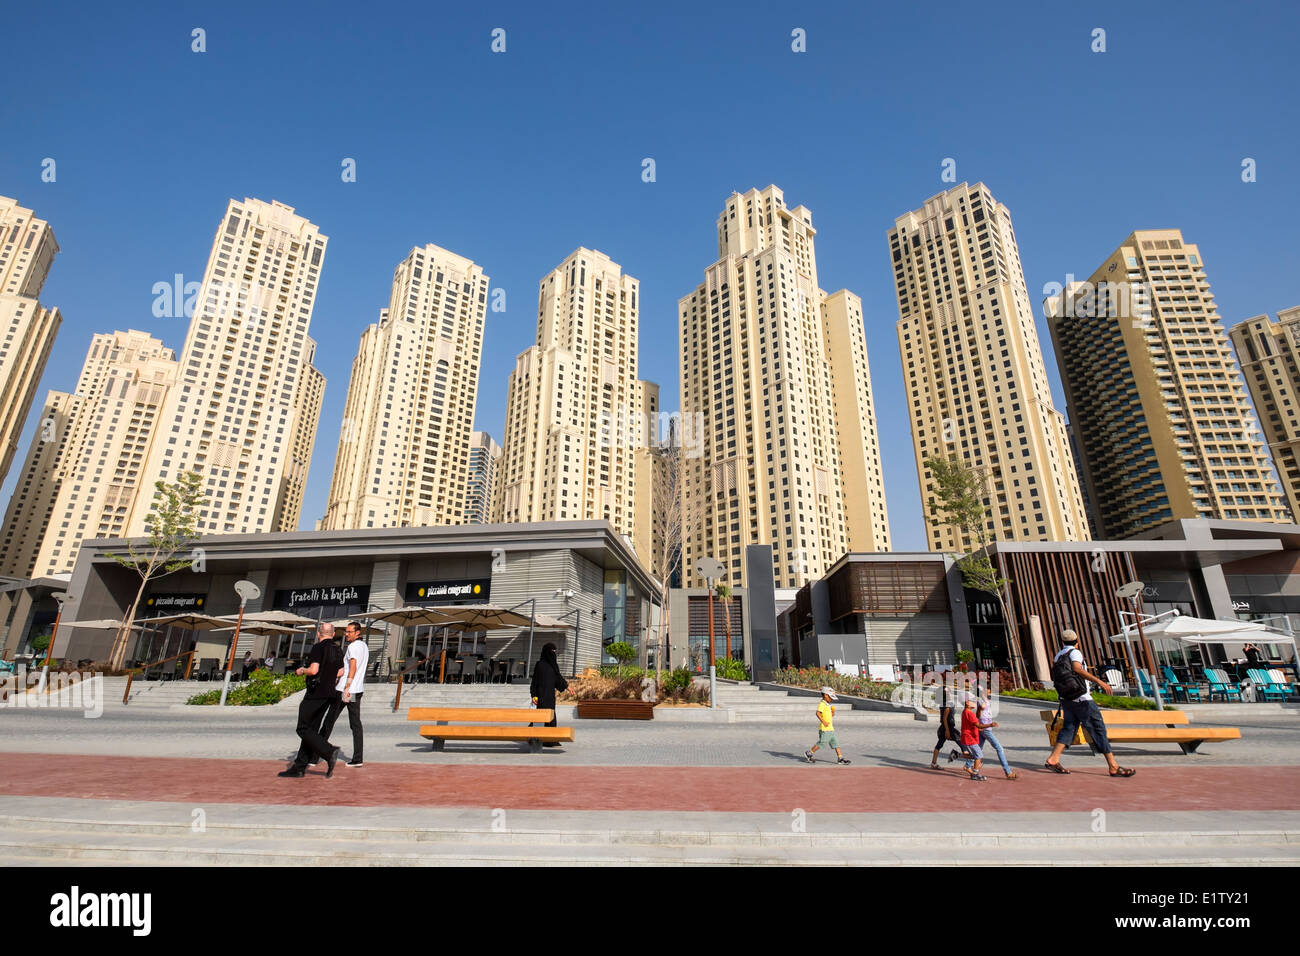 Nuovo impiego misto retail e il tempo libero lo sviluppo di proprietà sulla spiaggia a waterfront off la passeggiata a JBR in Dubai Emirati Arabi Uniti Foto Stock